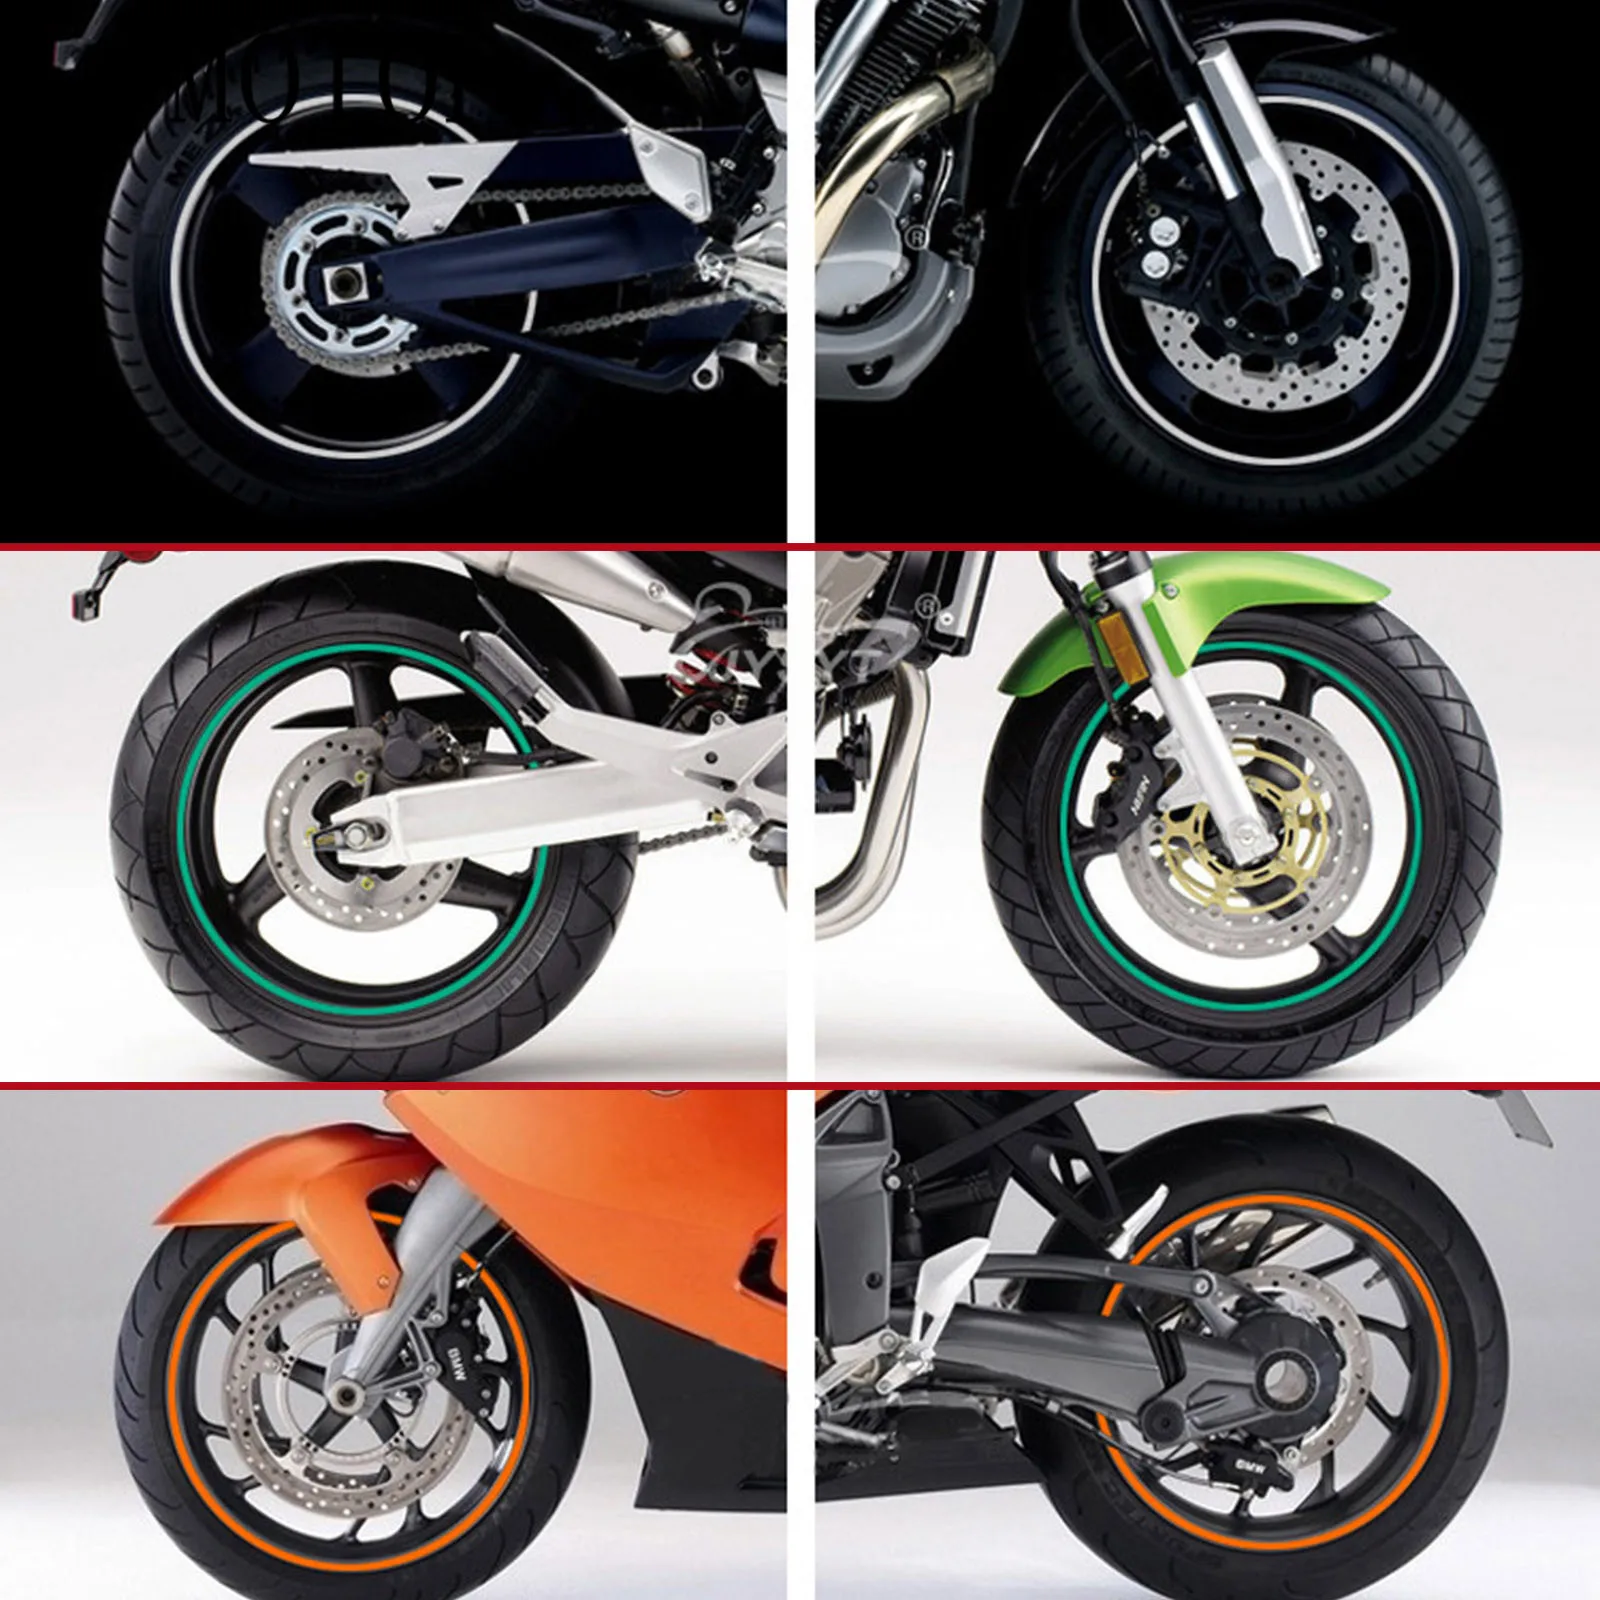 

Колесо Стикеры светоотражающие полосы обода ленты мотоцикл Стикеры s для KTM 450EXC-R 450 ралли Реплика 450SMR 500EXC XC-W RC125 125